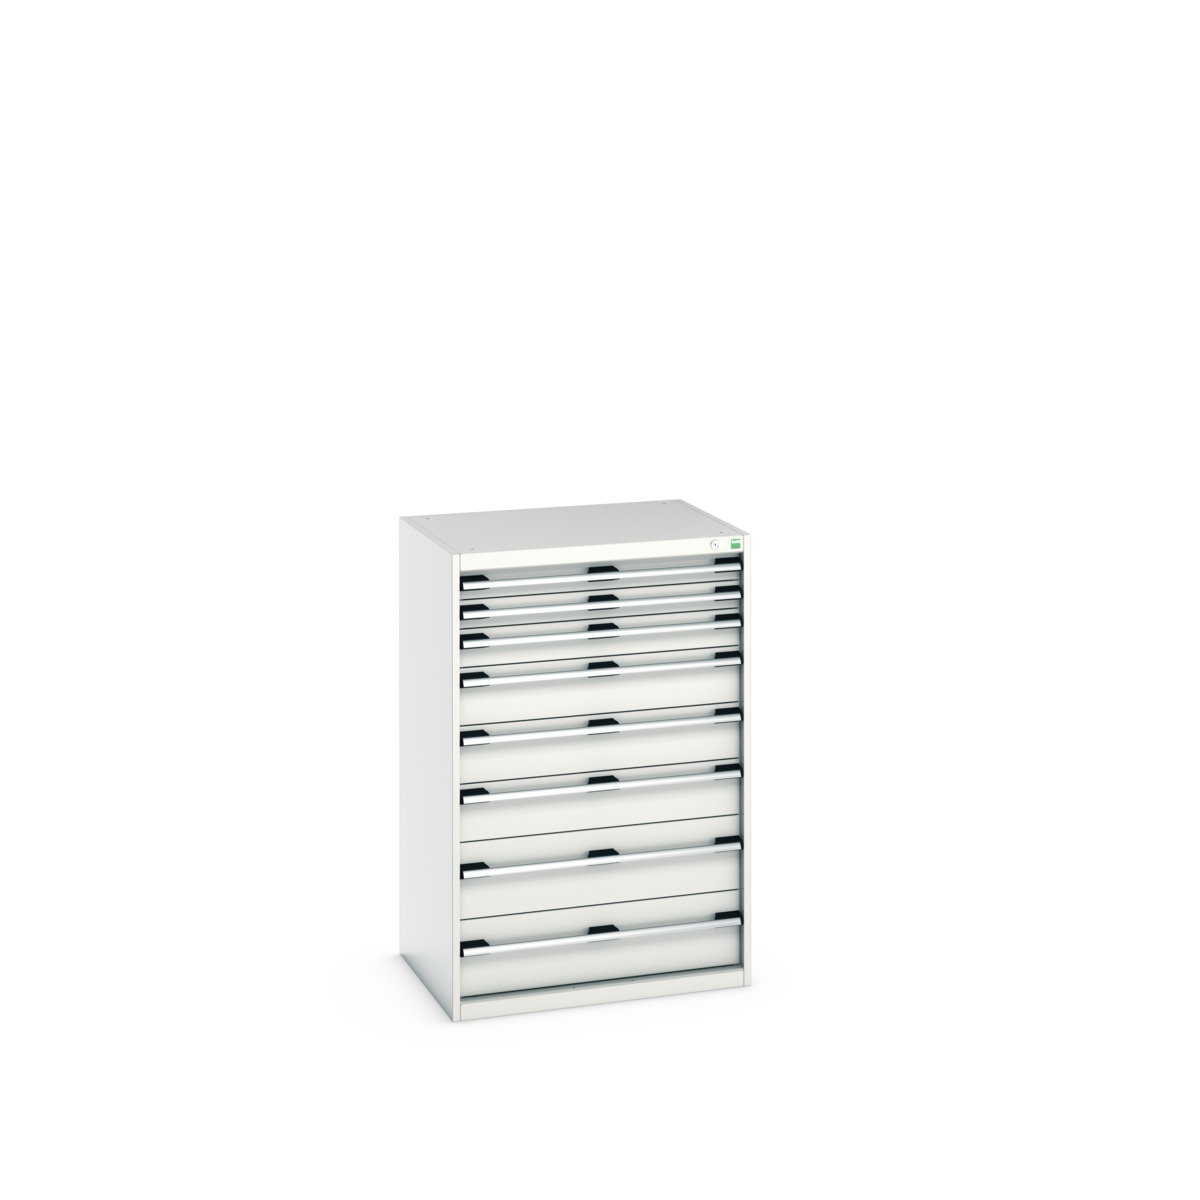 40020062.16V - cubio drawer cabinet